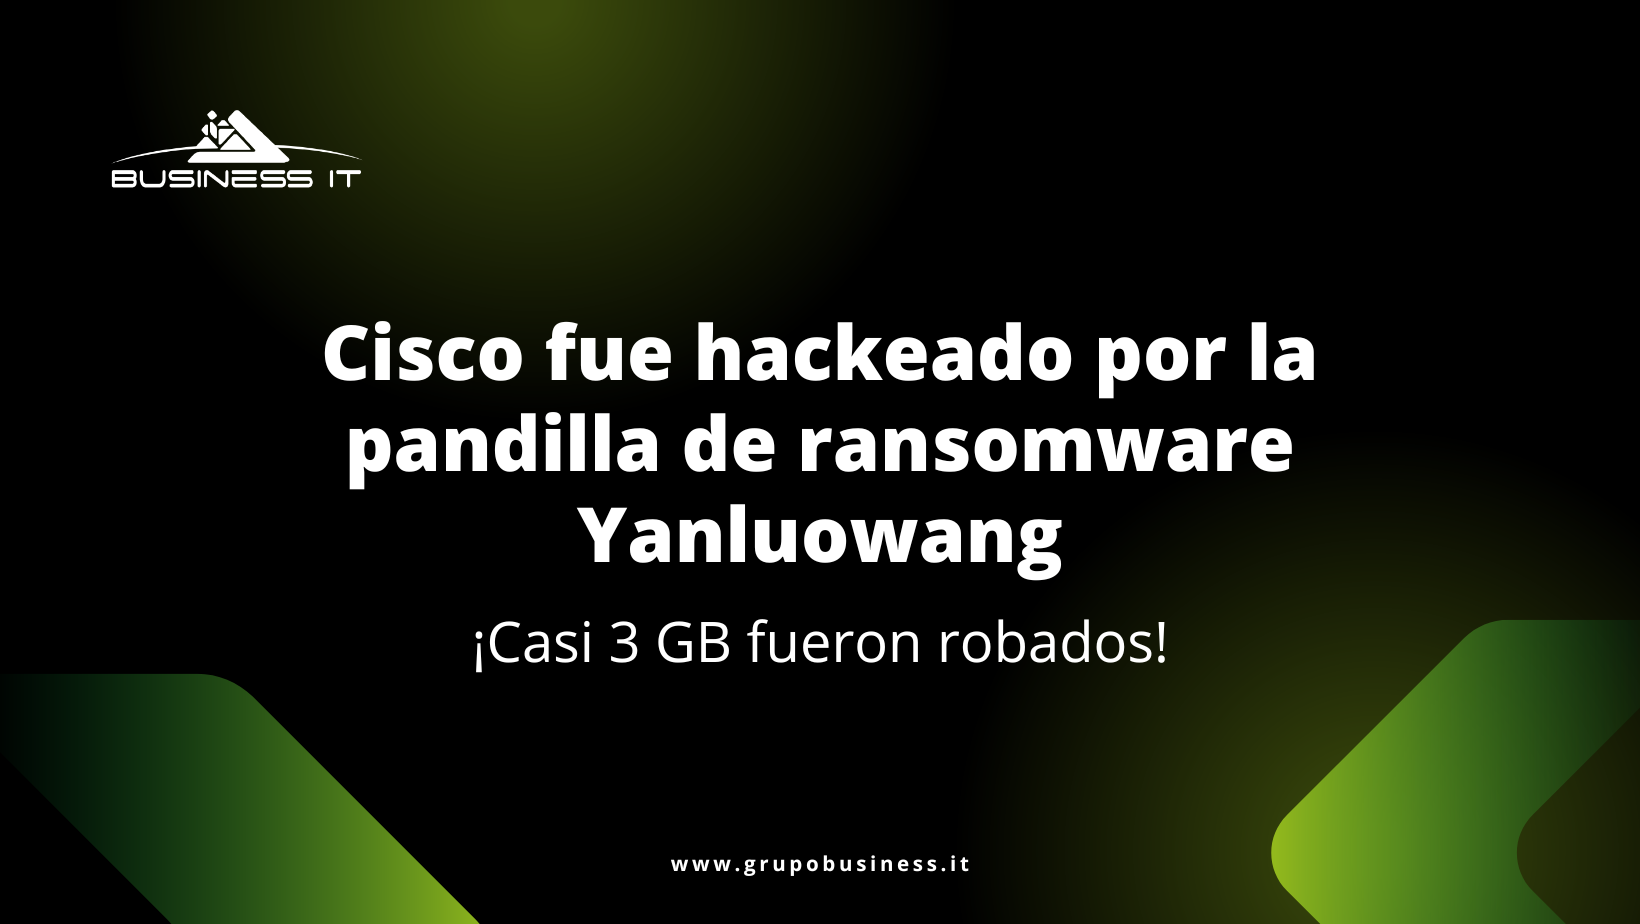 Cisco fue hackeado por la pandilla de ransomware Yanluowang